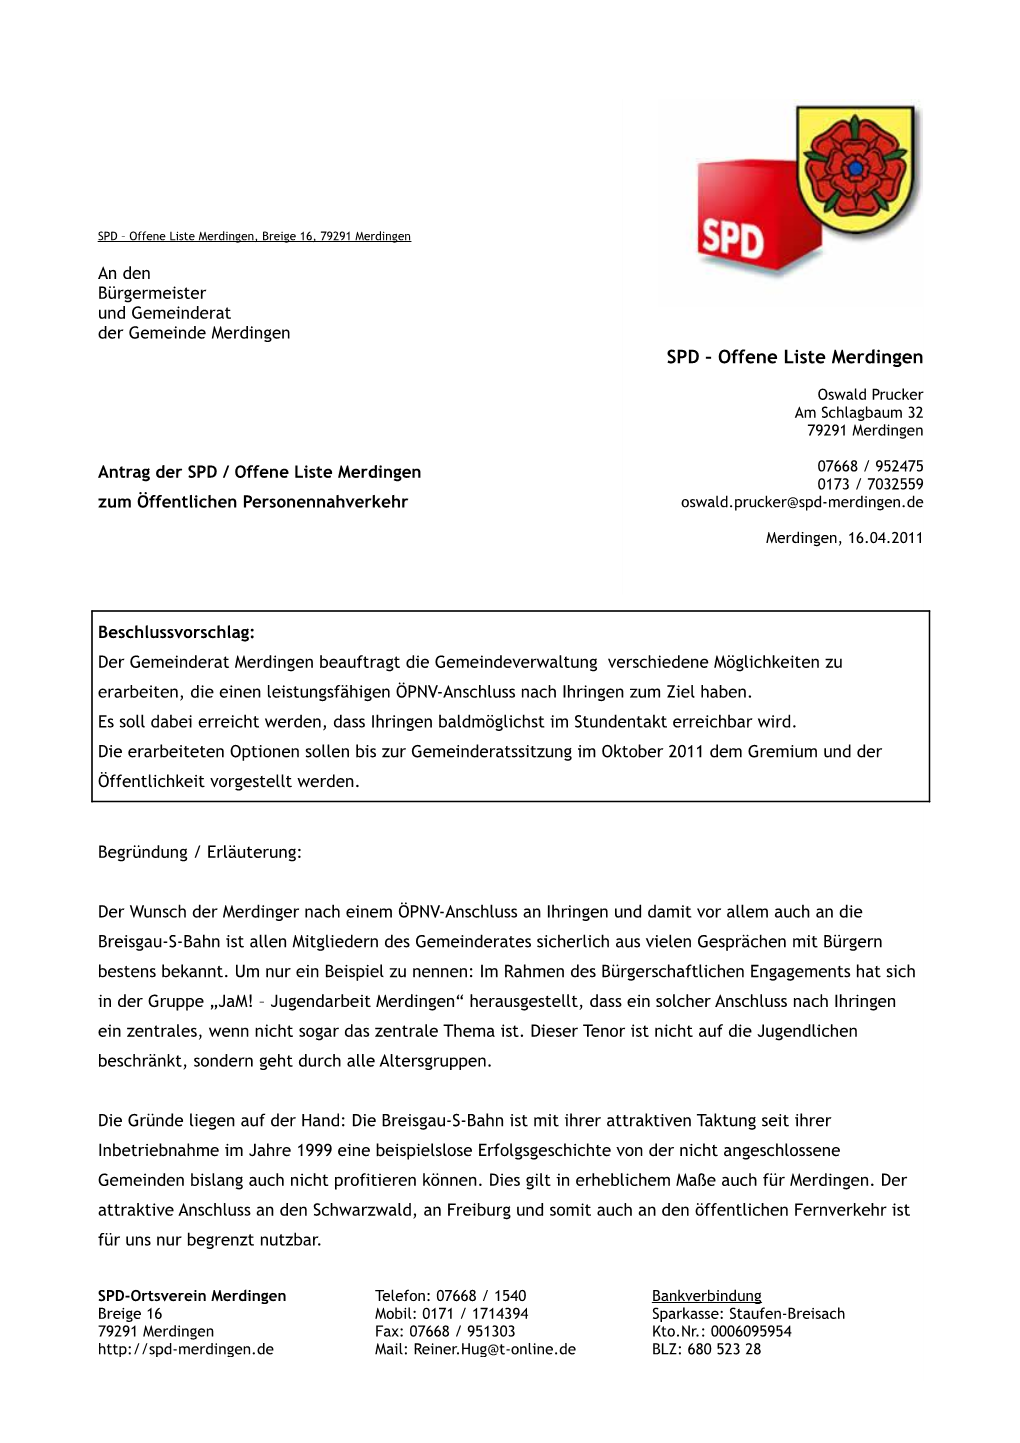 SPD – Offene Liste Merdingen, Breige 16, 79291 Merdingen